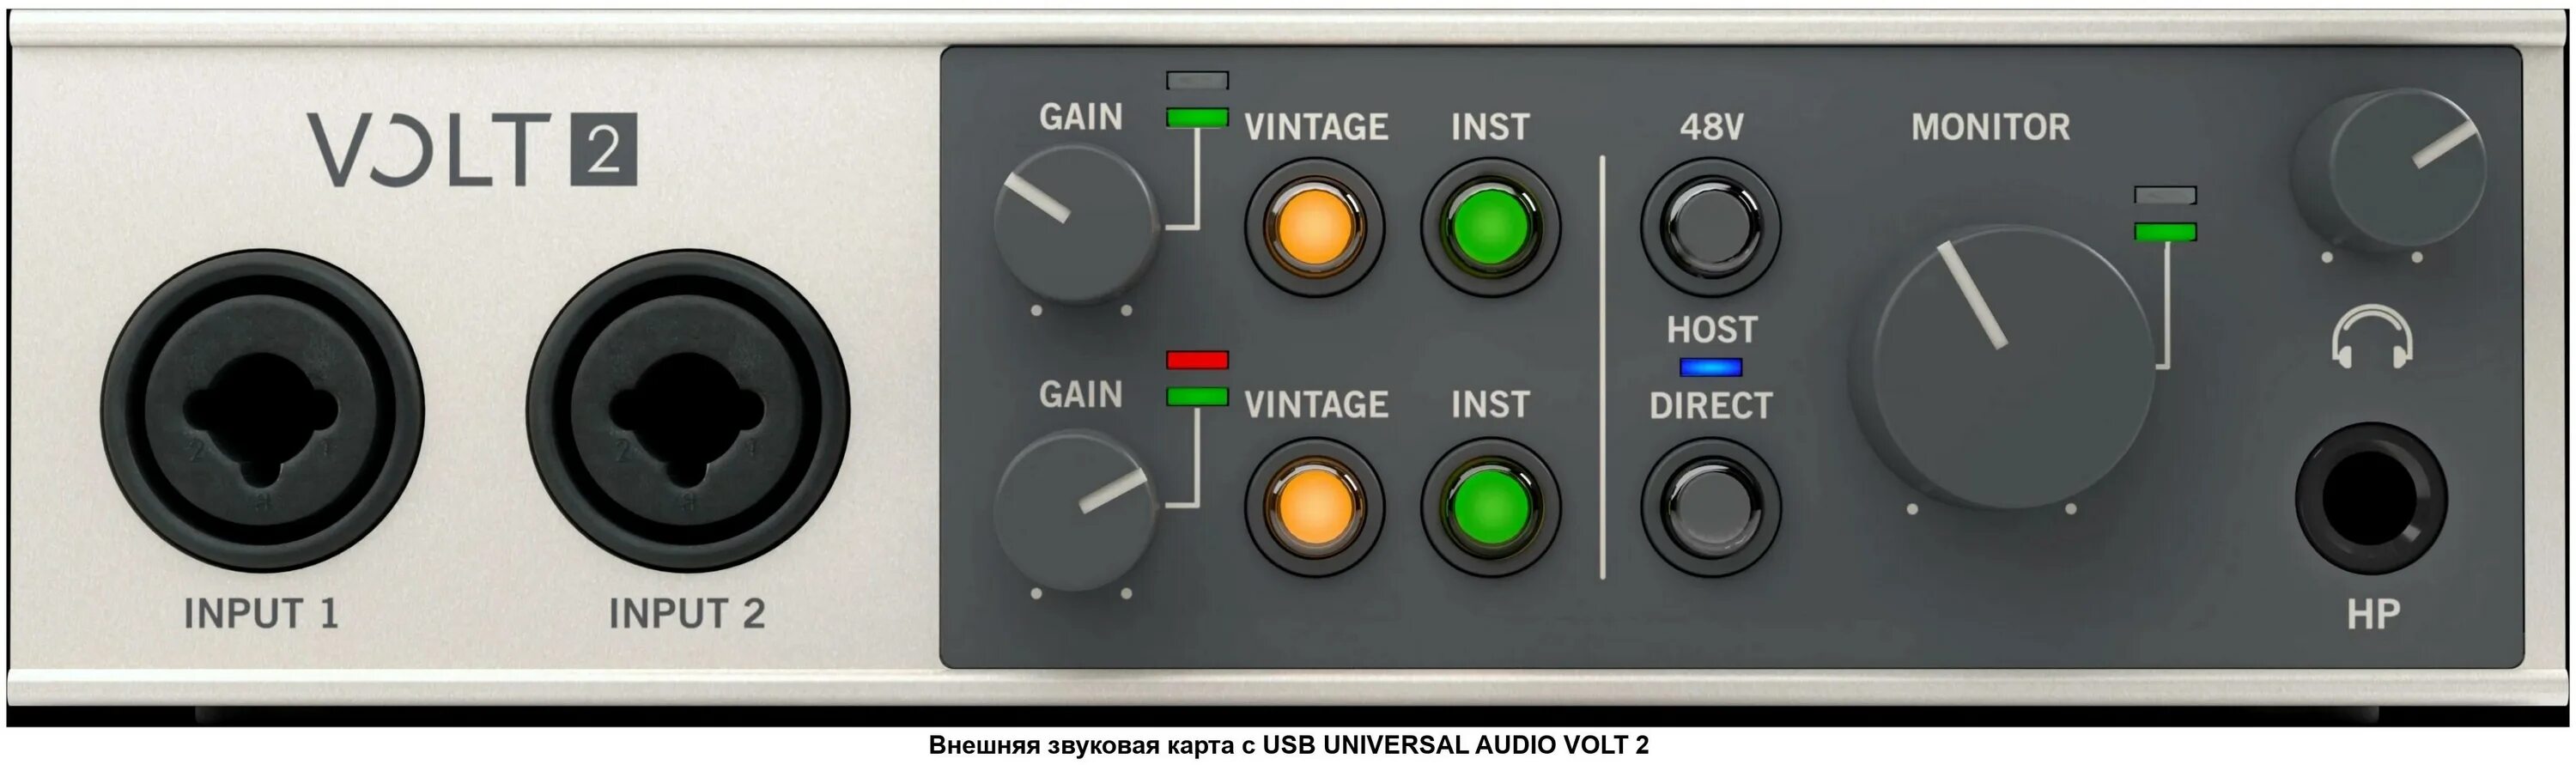 Universal Audio Volt 2. Universal Audio Volt 4. Universal Audio Volt 1. Аудиокарта Universal Audio Volt 1. Audio volt 2